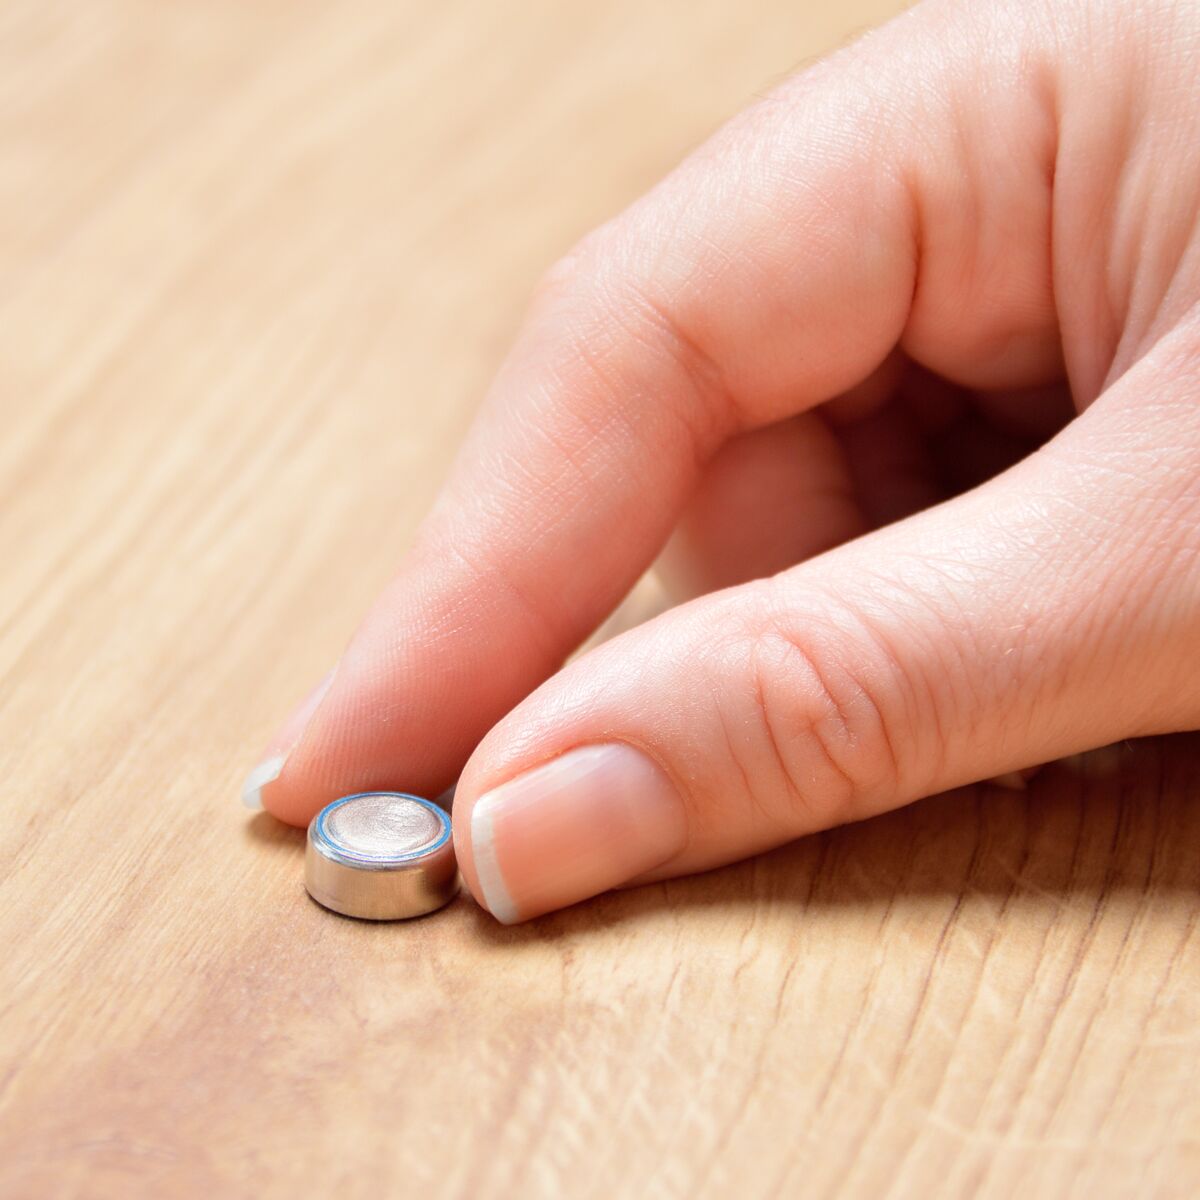 Le danger très sérieux des piles boutons pour les enfants